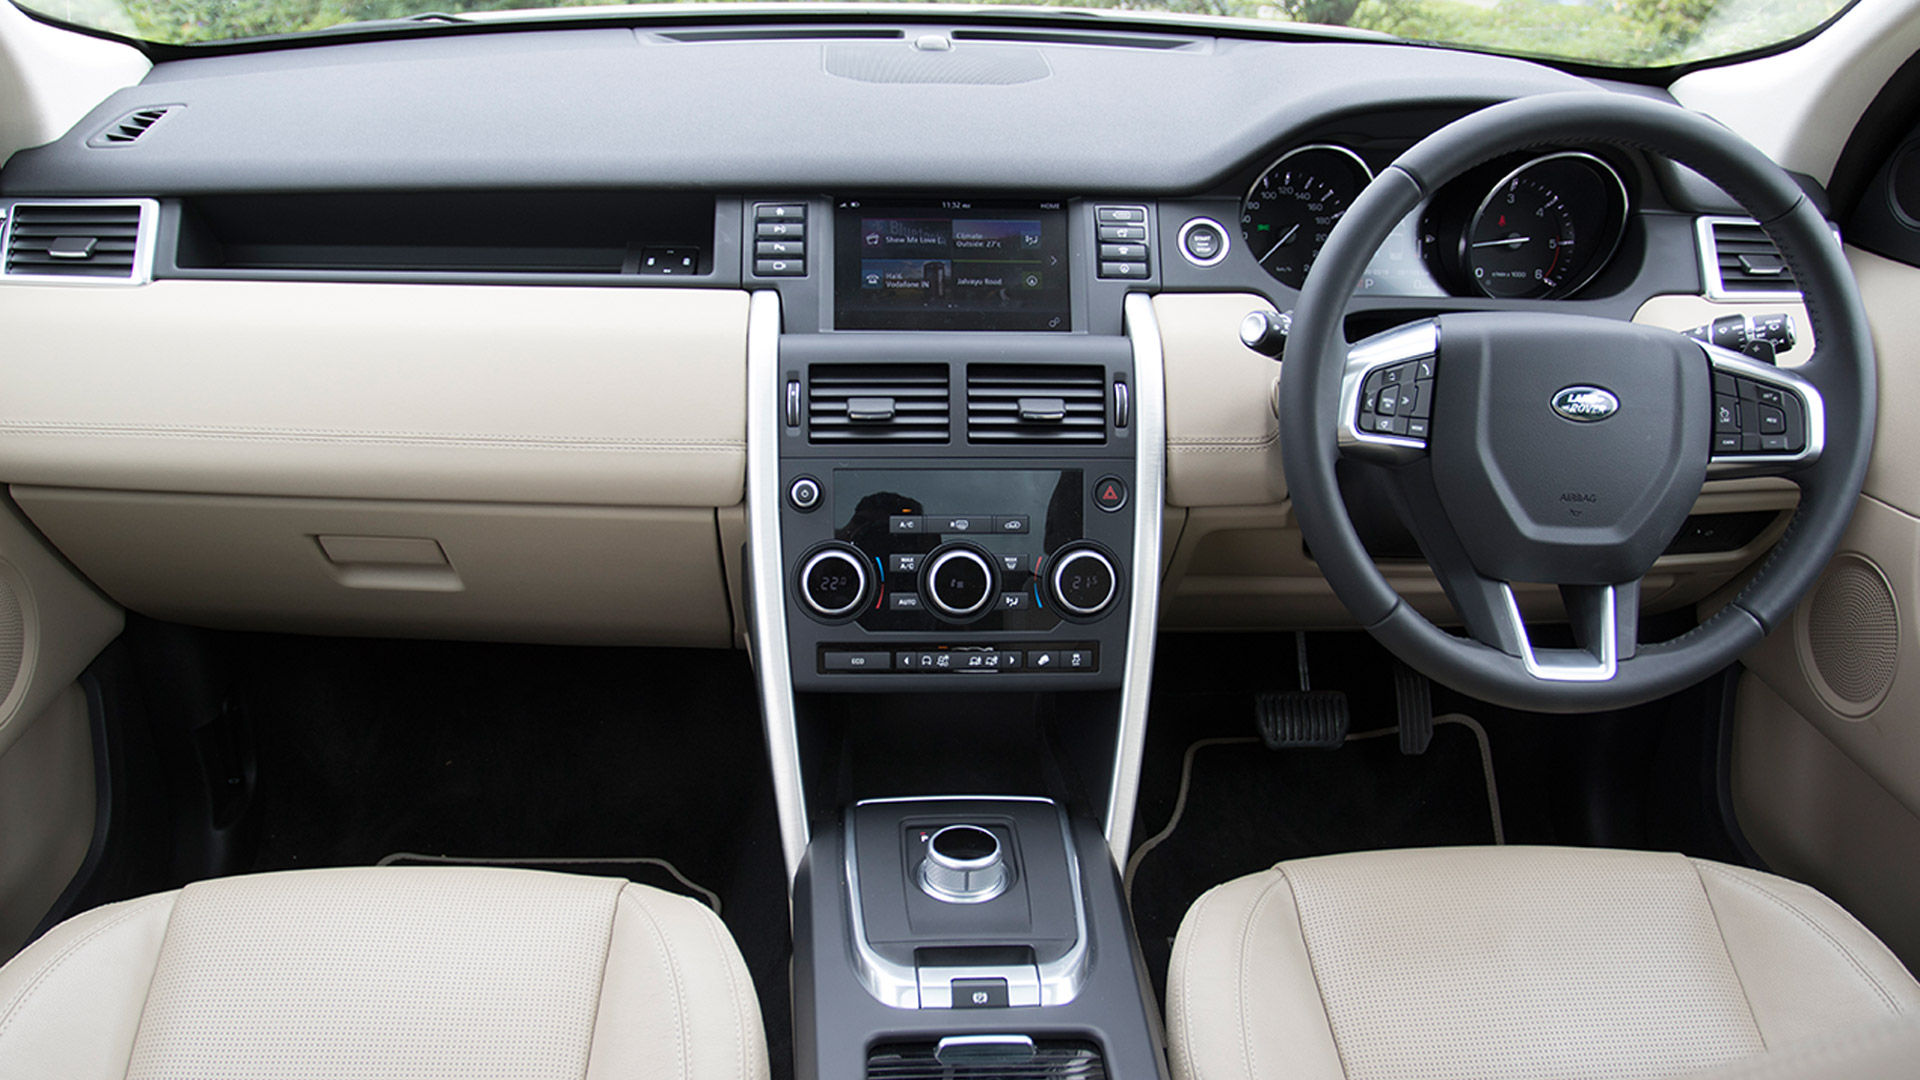 Land Rover Discovery Sport 2015 Hse Interior Car Photos